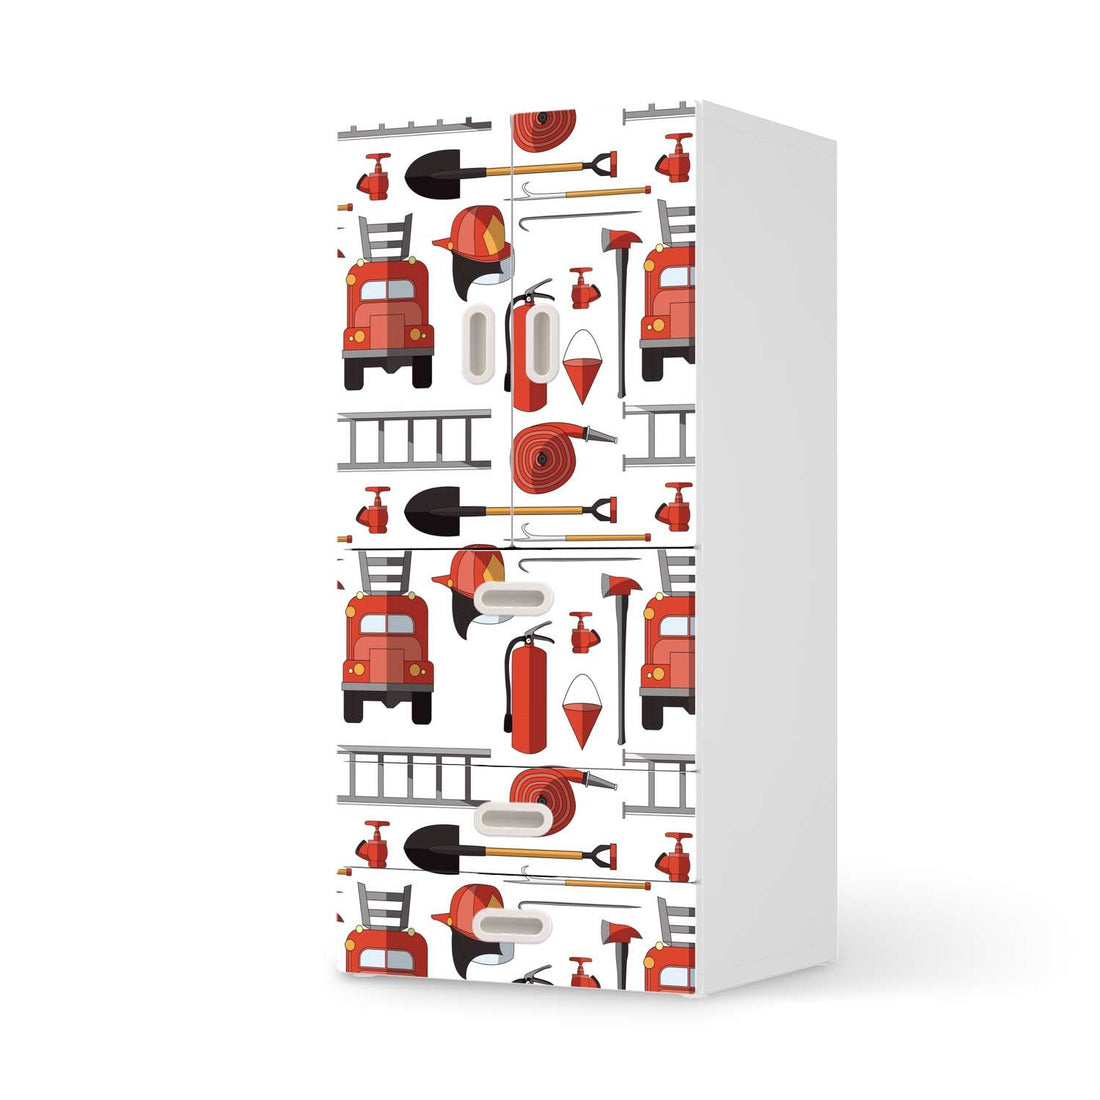 Möbelfolie Firefighter - IKEA Stuva / Fritids kombiniert - 3 Schubladen und 2 kleine Türen  - weiss